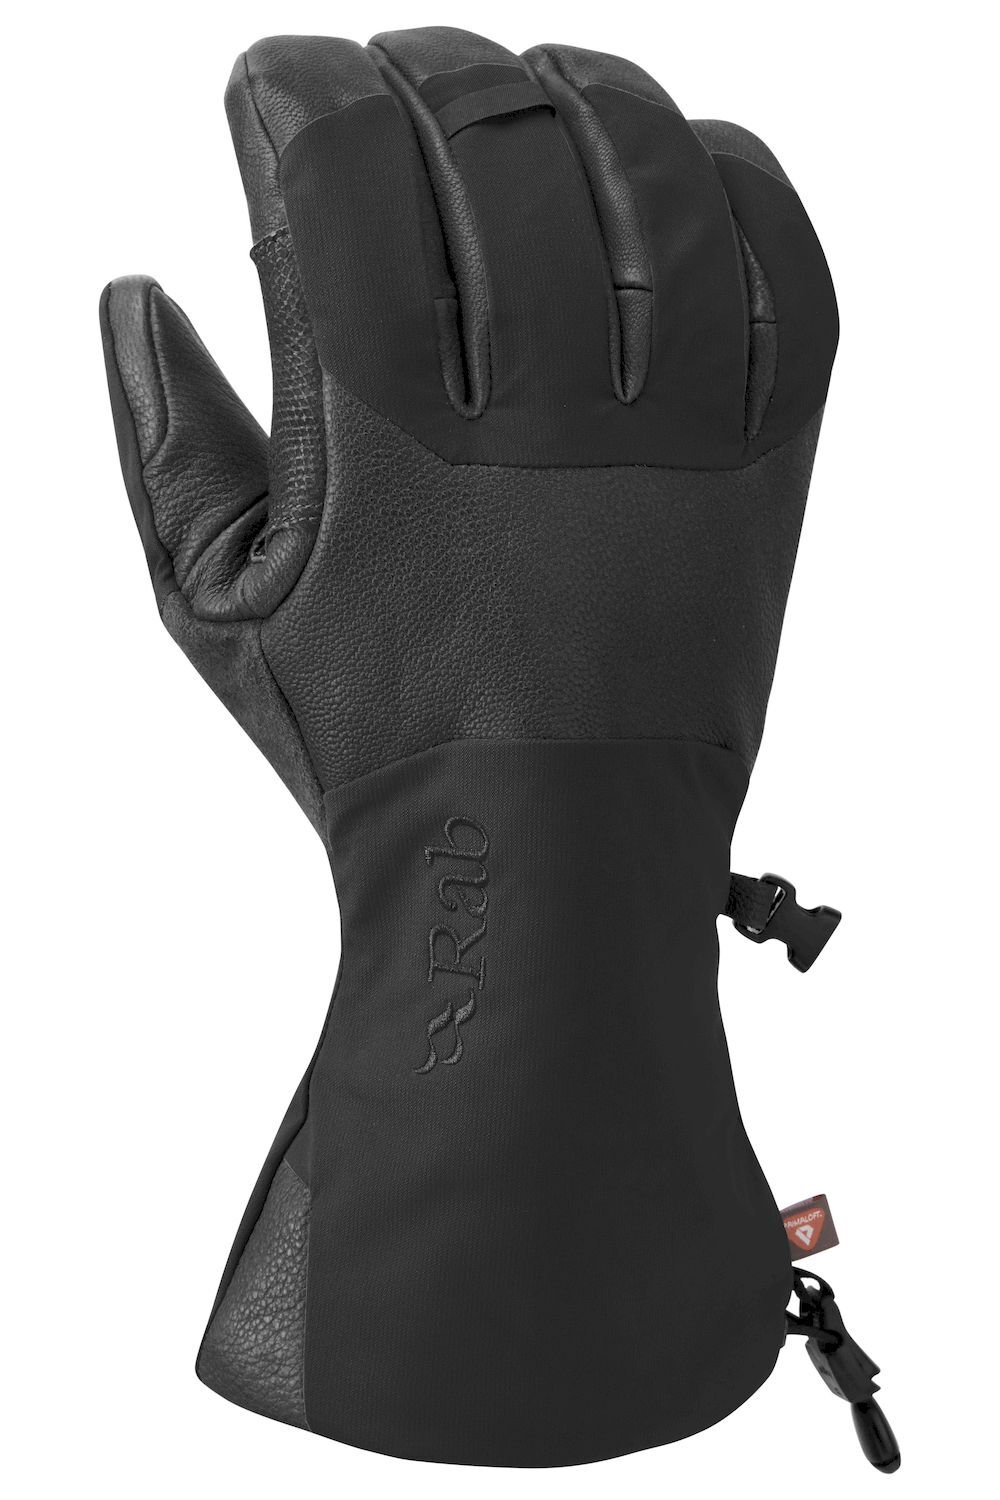 Rab Guide 2 GTX Gloves - Handskar